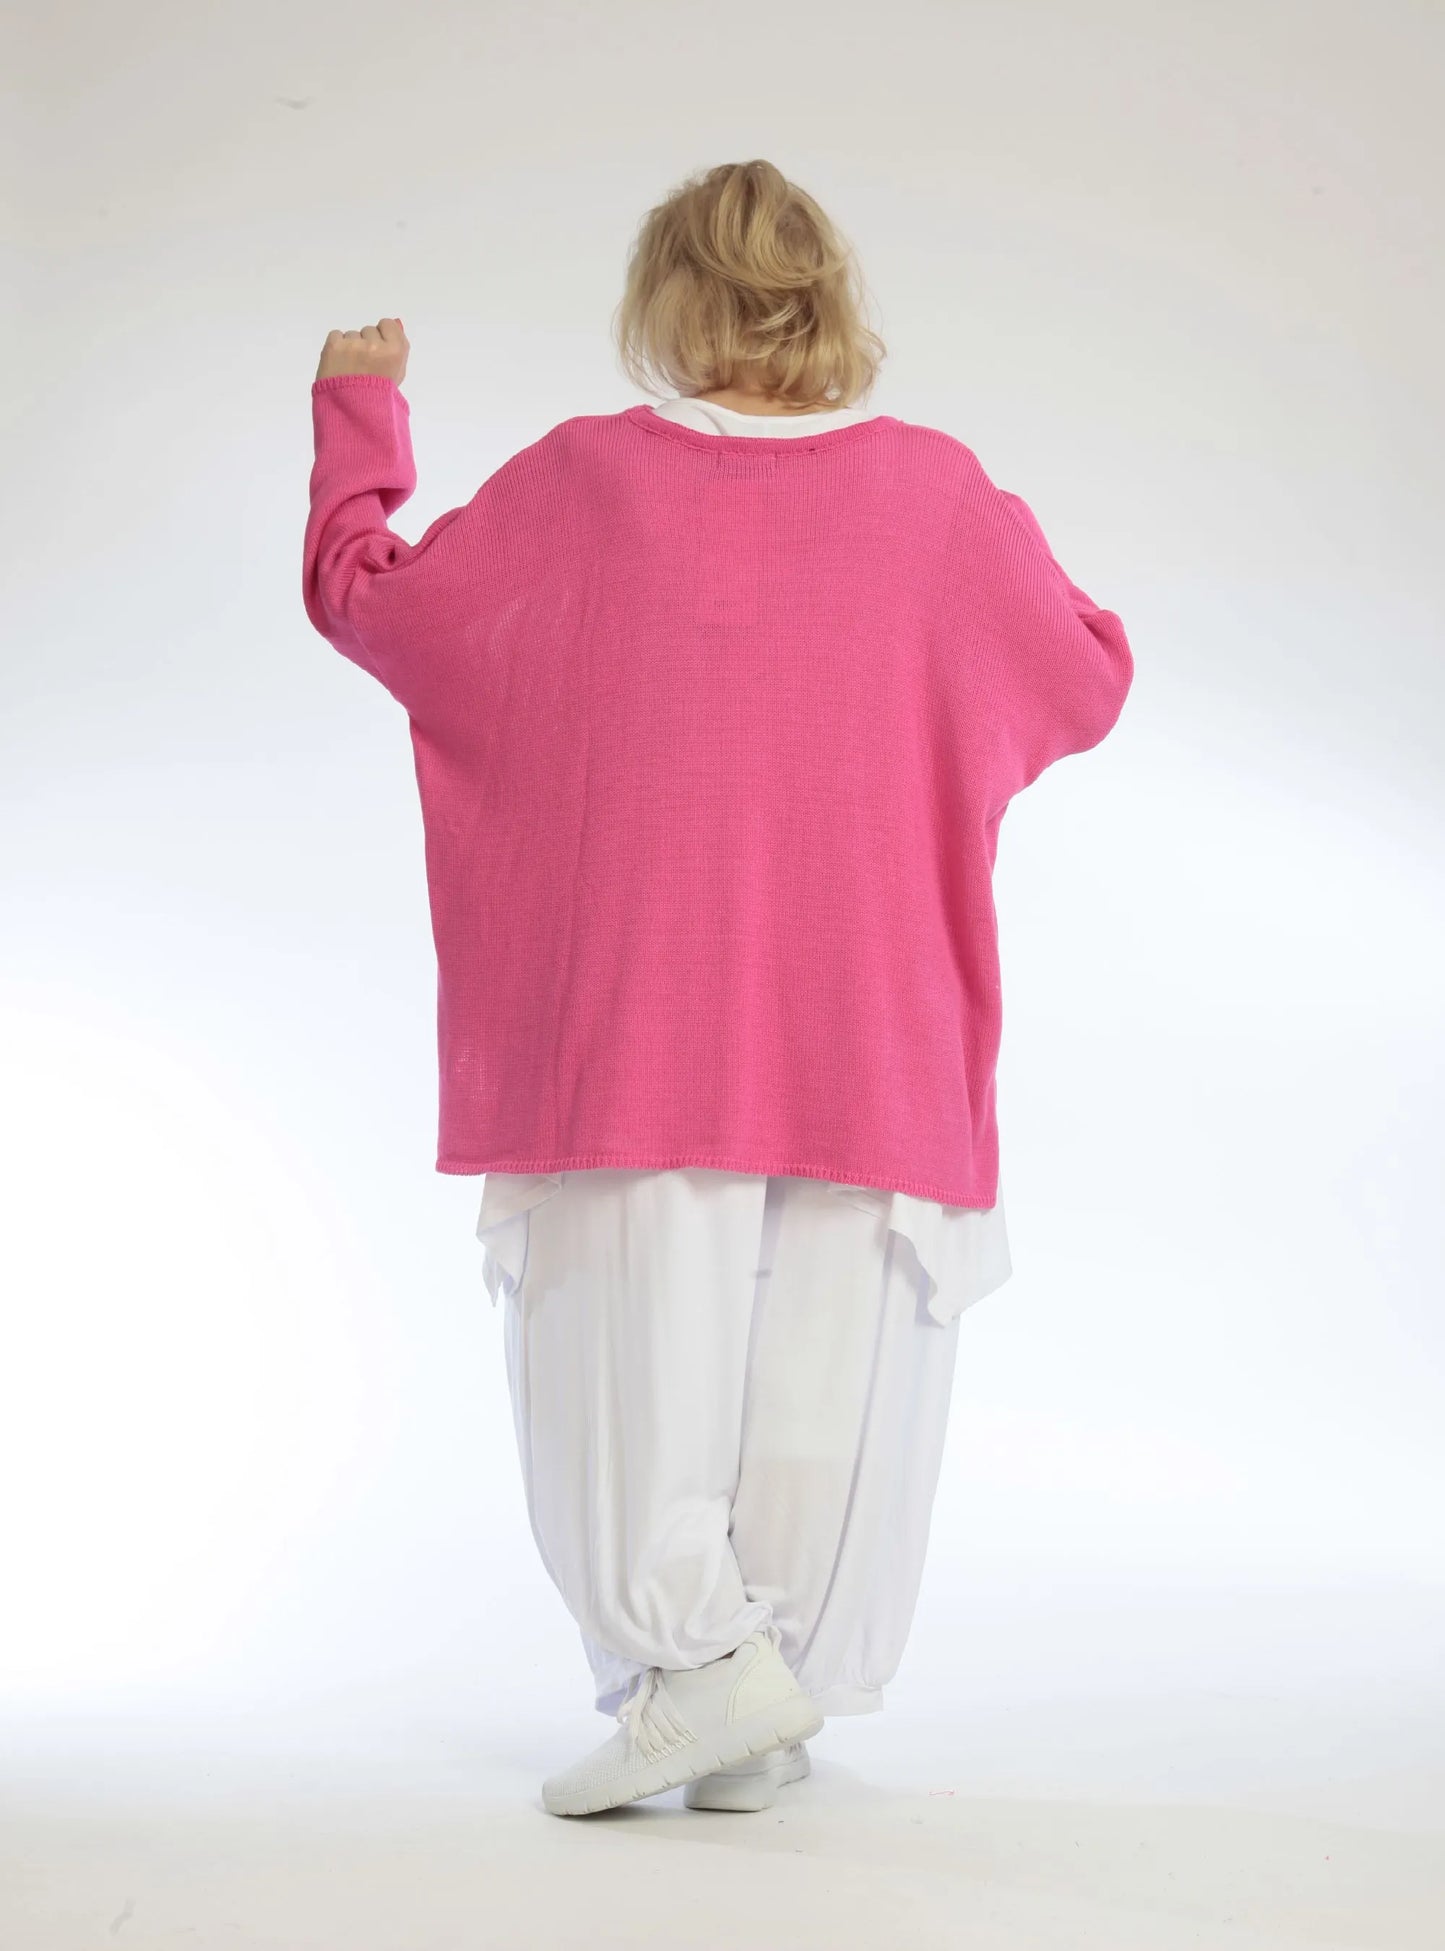 Alltags Big Shirt in gerader Form aus feiner Strick Qualität, Sena in Pink